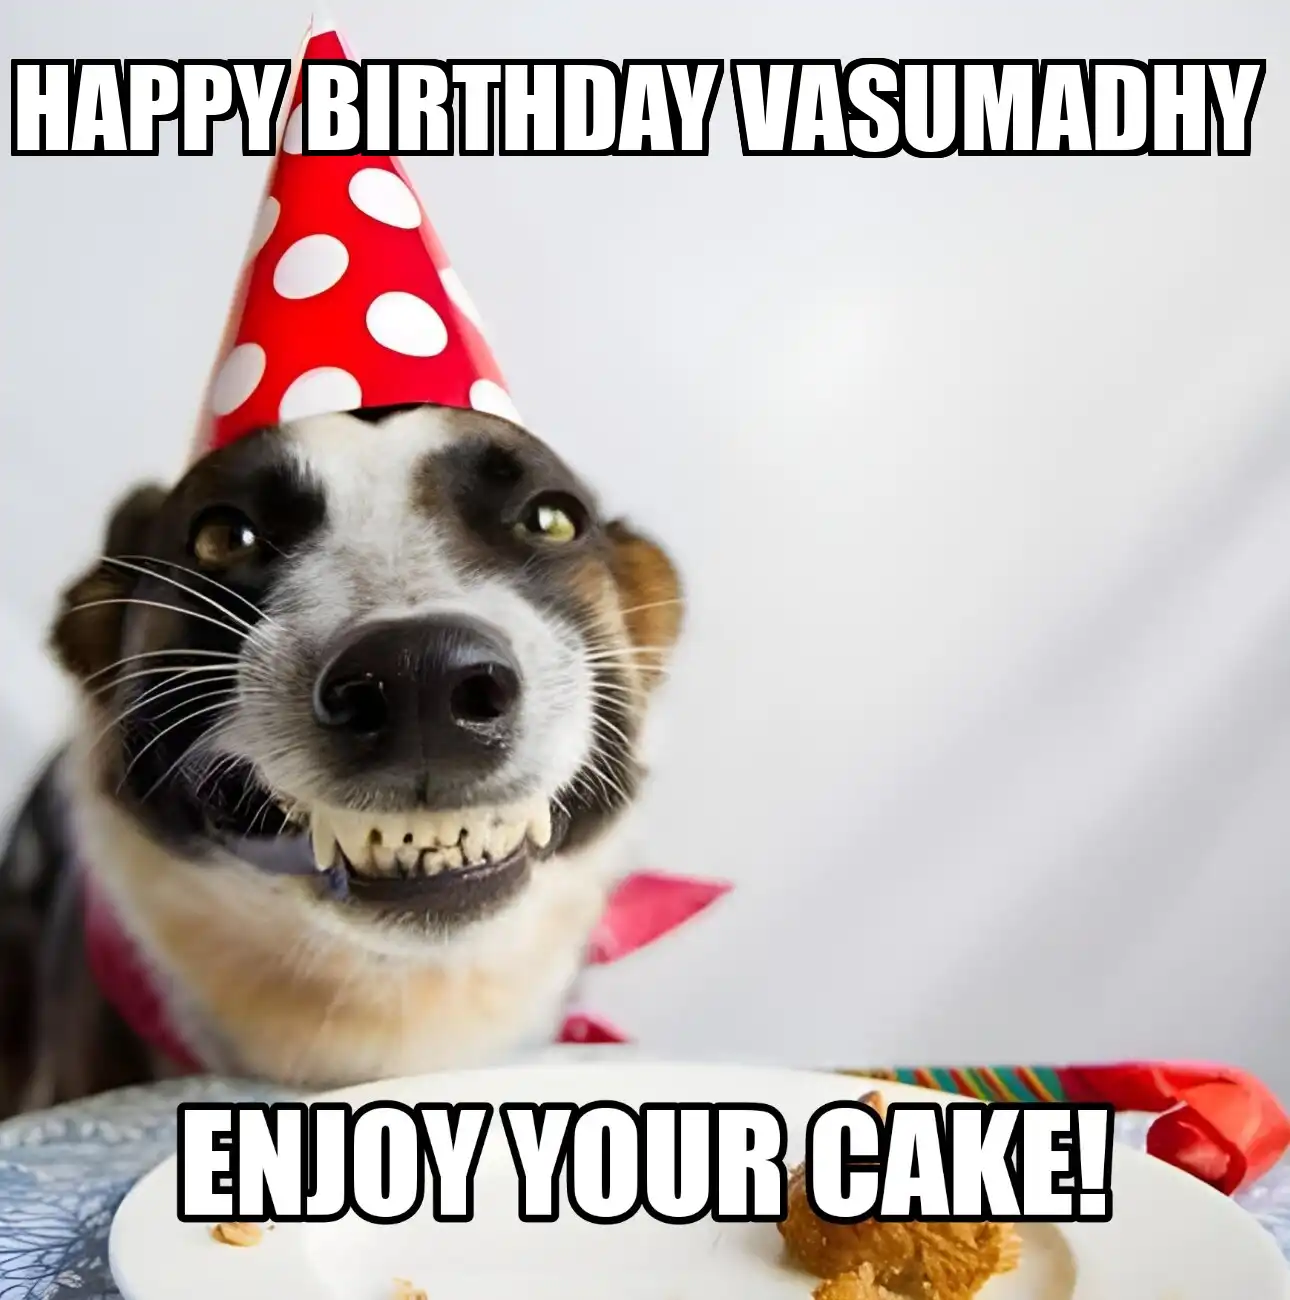 Happy Birthday Vasumadhy Enjoy Your Cake Dog Meme